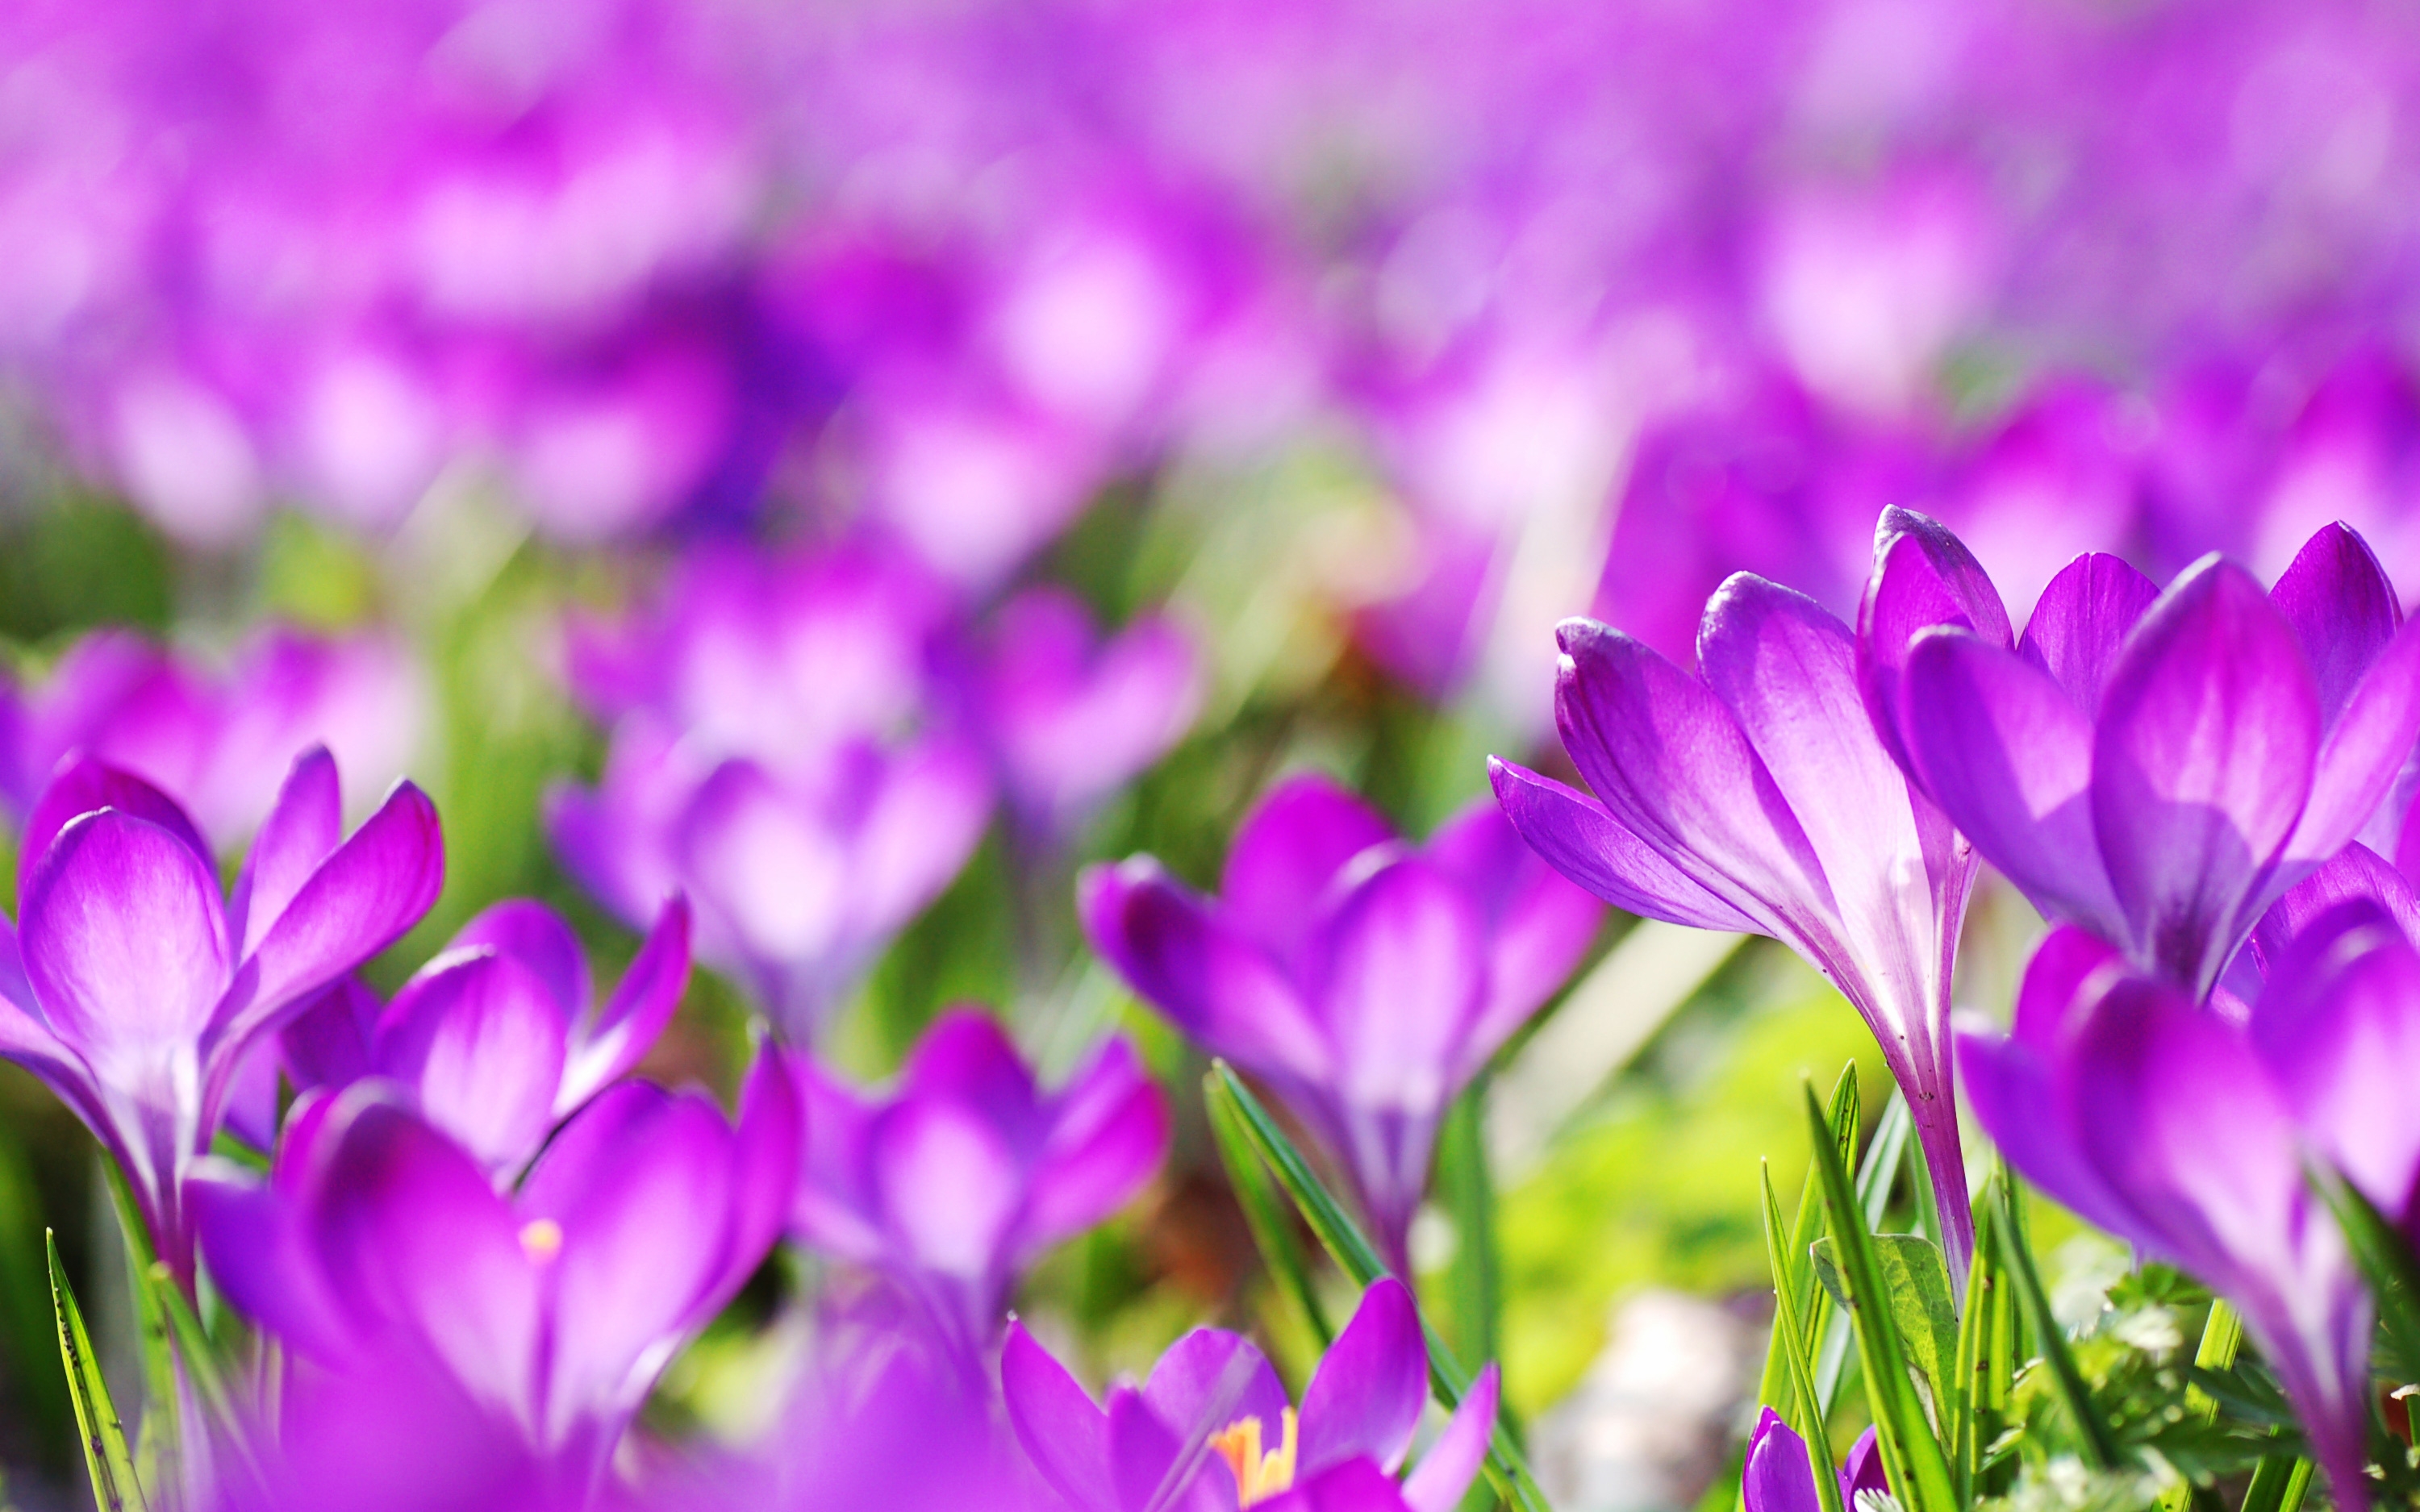 A field of purple crocus flowers